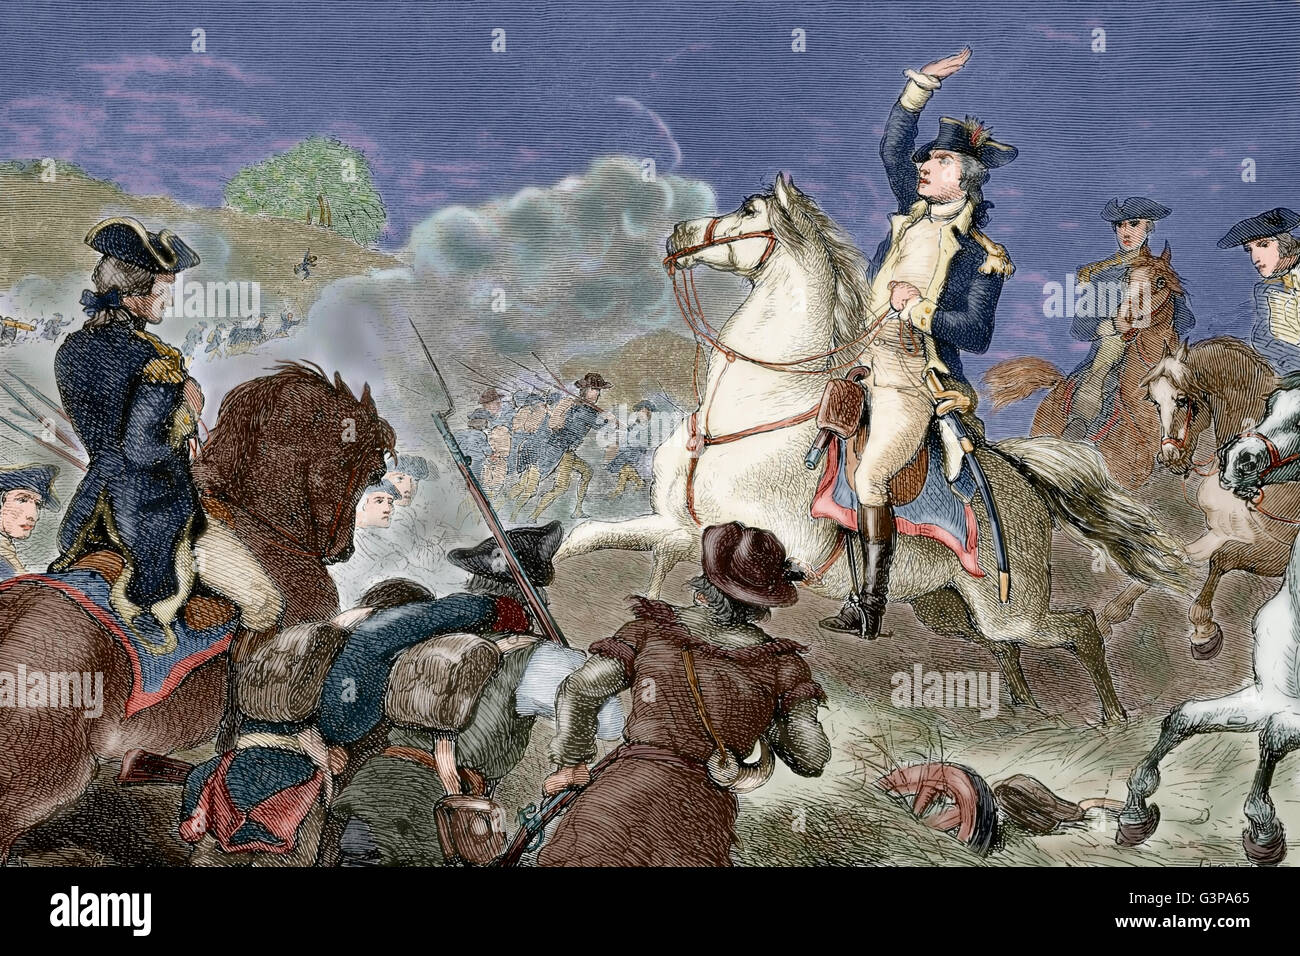 La guerra rivoluzionaria americana (1775-1783). George Washington (1732-1799), il comandante in capo dell'esercito continentale, comandare la truppa nella battaglia di Monmouth (1778). Incisione. Xix secolo. Colorati. Foto Stock